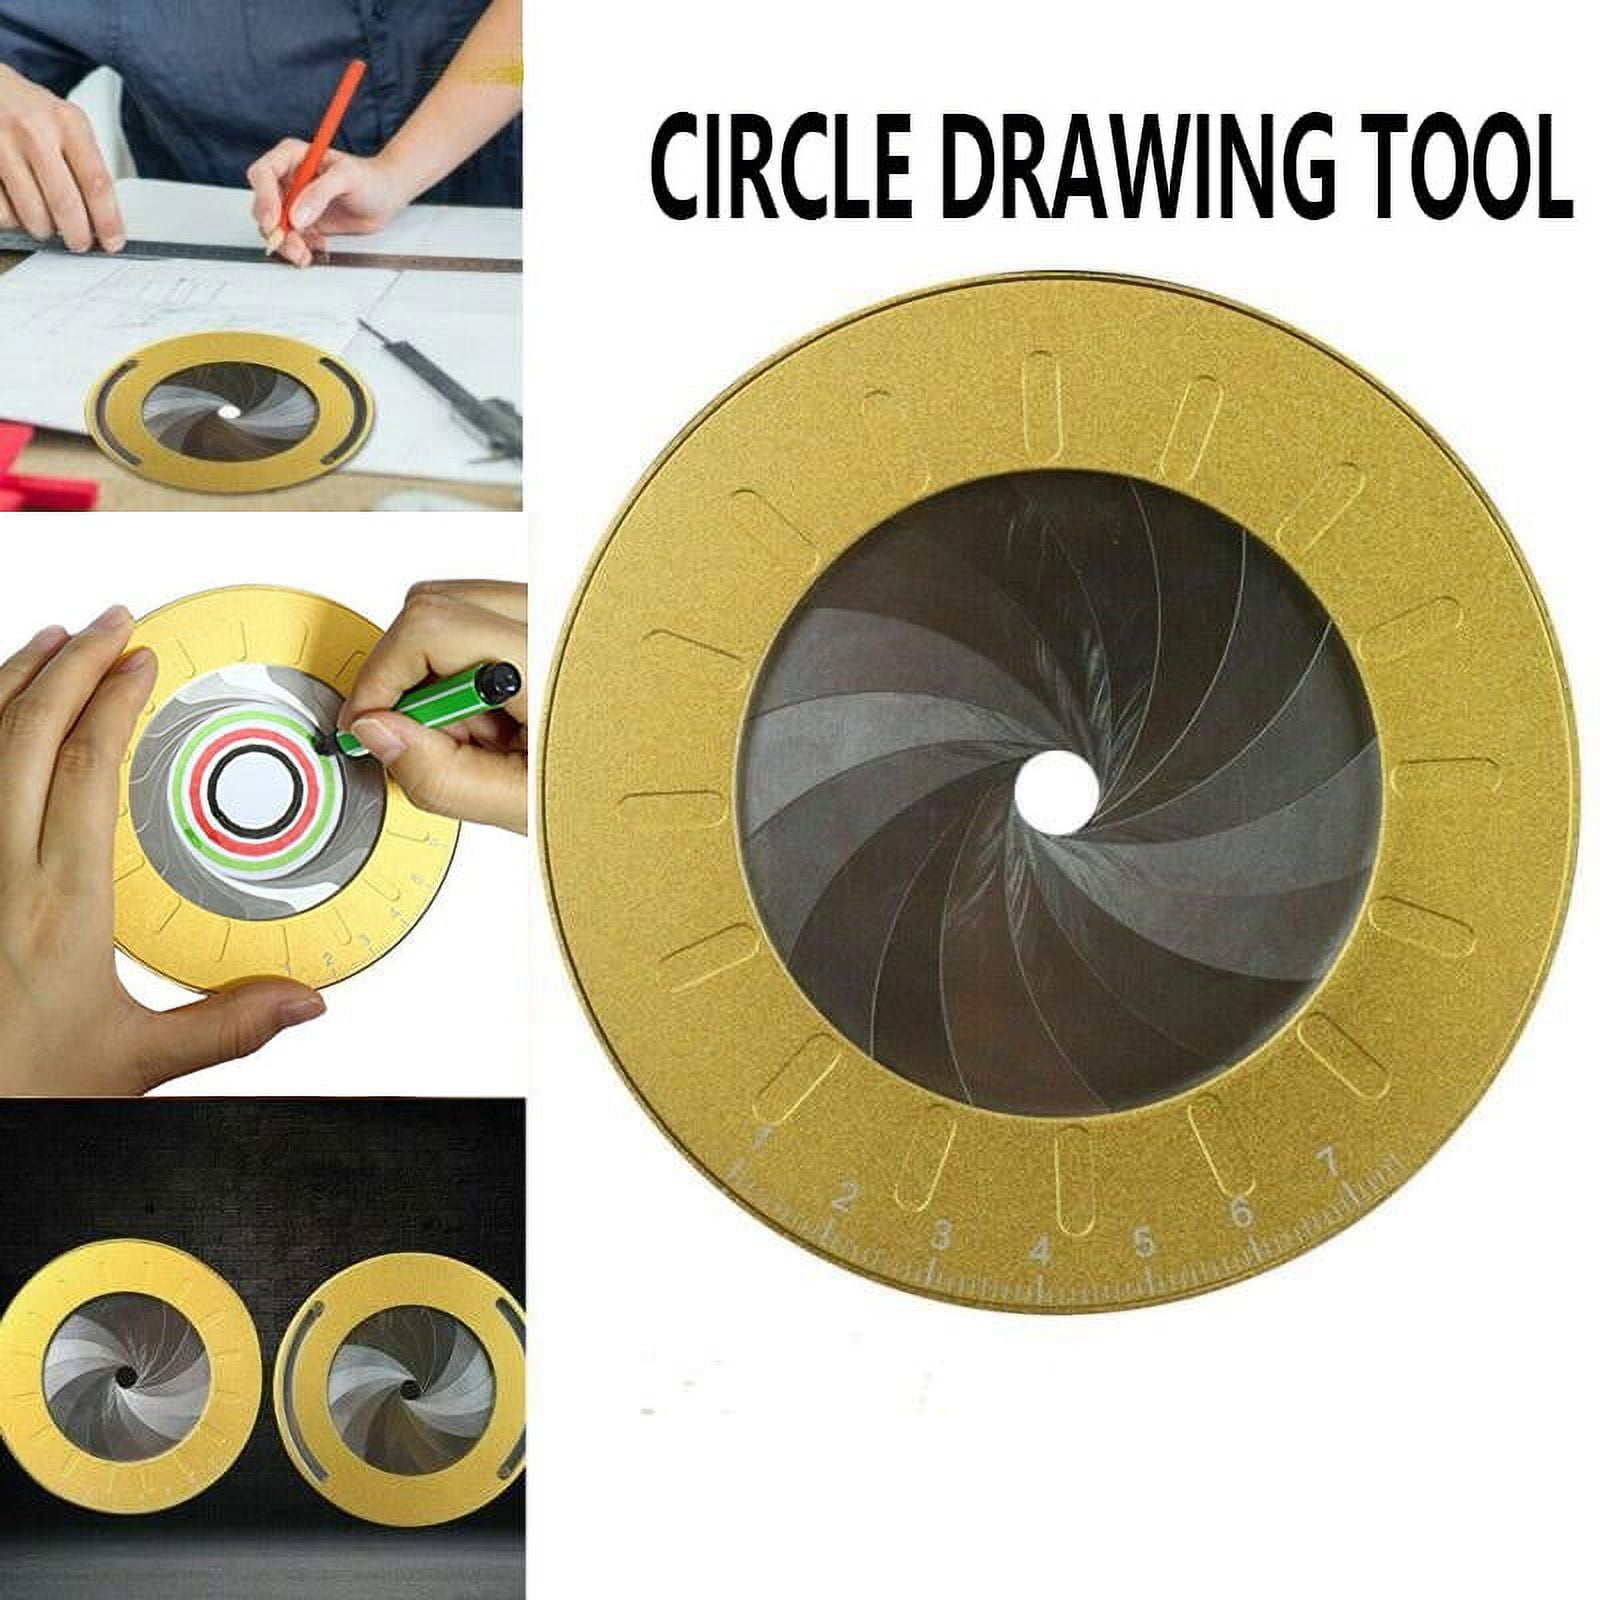 Szliyands Circle Drawing Maker, Adjustable Rotary India